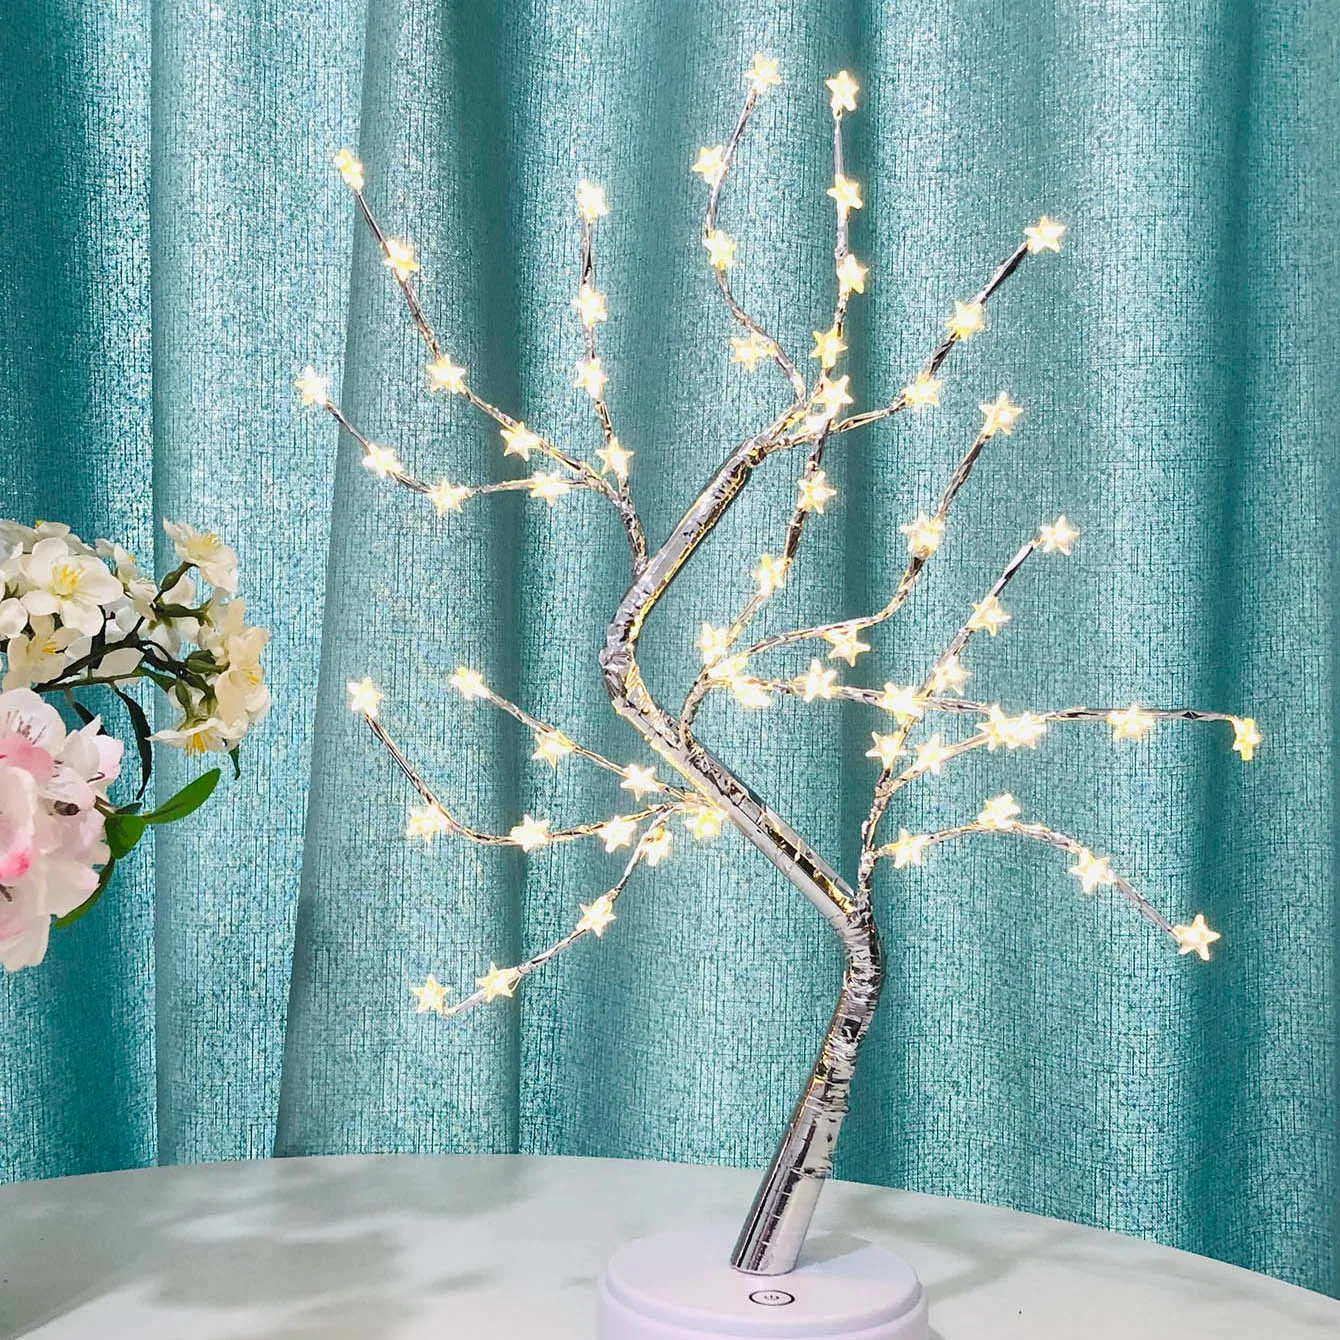 60 светодиодный USB огонь дерево звезда свет медный провод настольные лампы Ночник для внутреннего спальни панель для свадьбы рождественские украшения